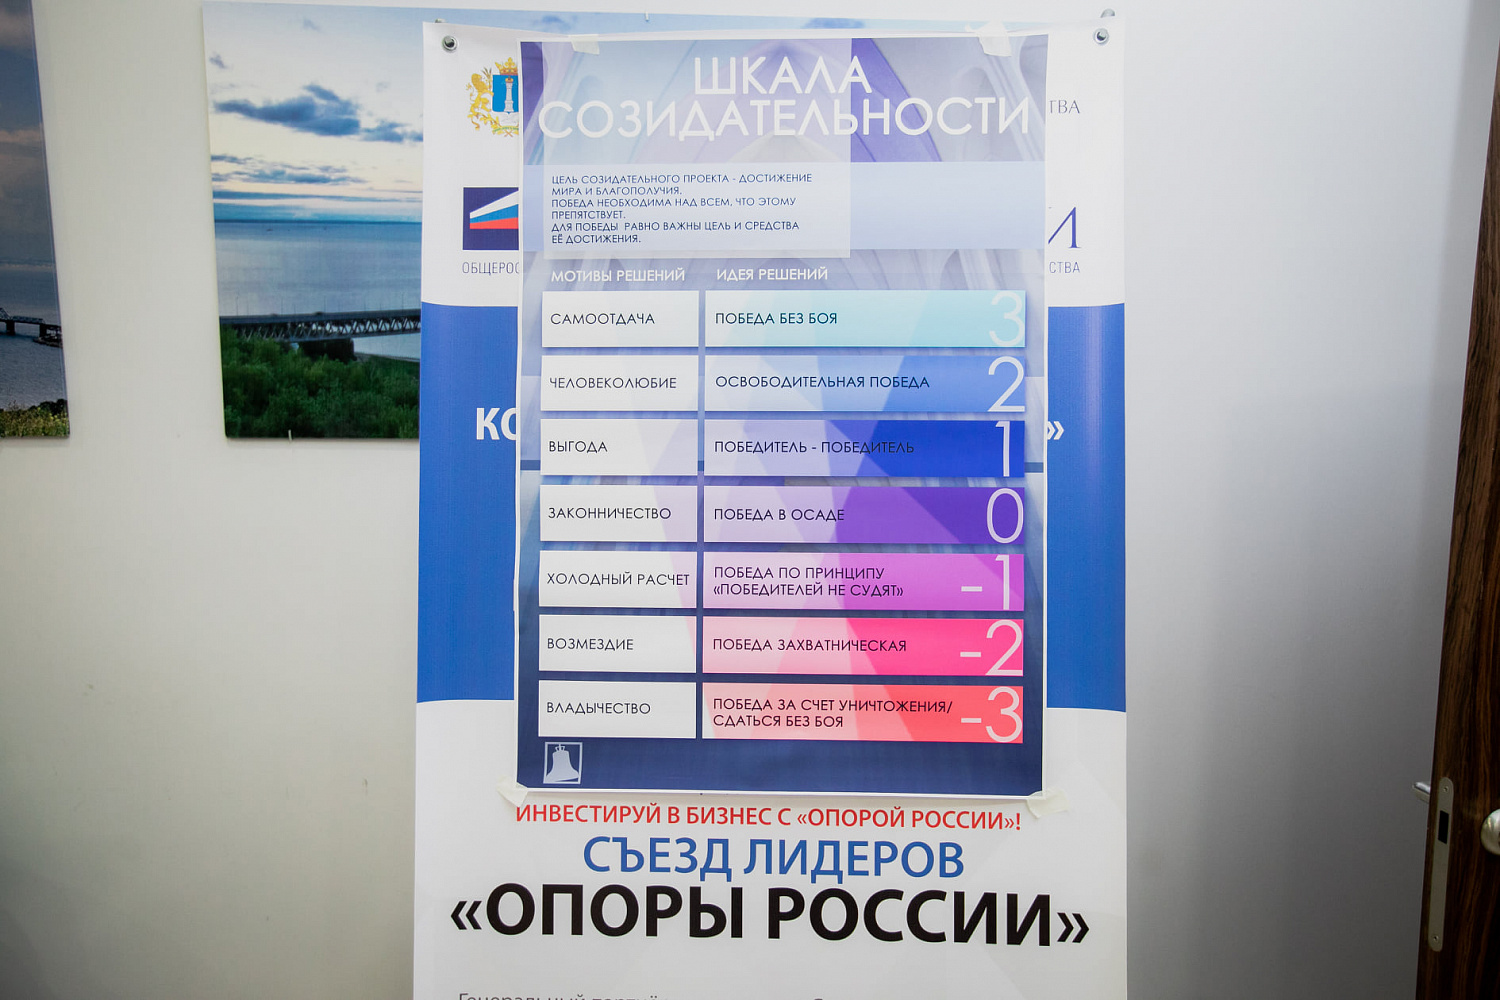 Публикуем итоговый отчет со Съезда лидеров «ОПОРЫ РОССИИ» в Ульяновске.